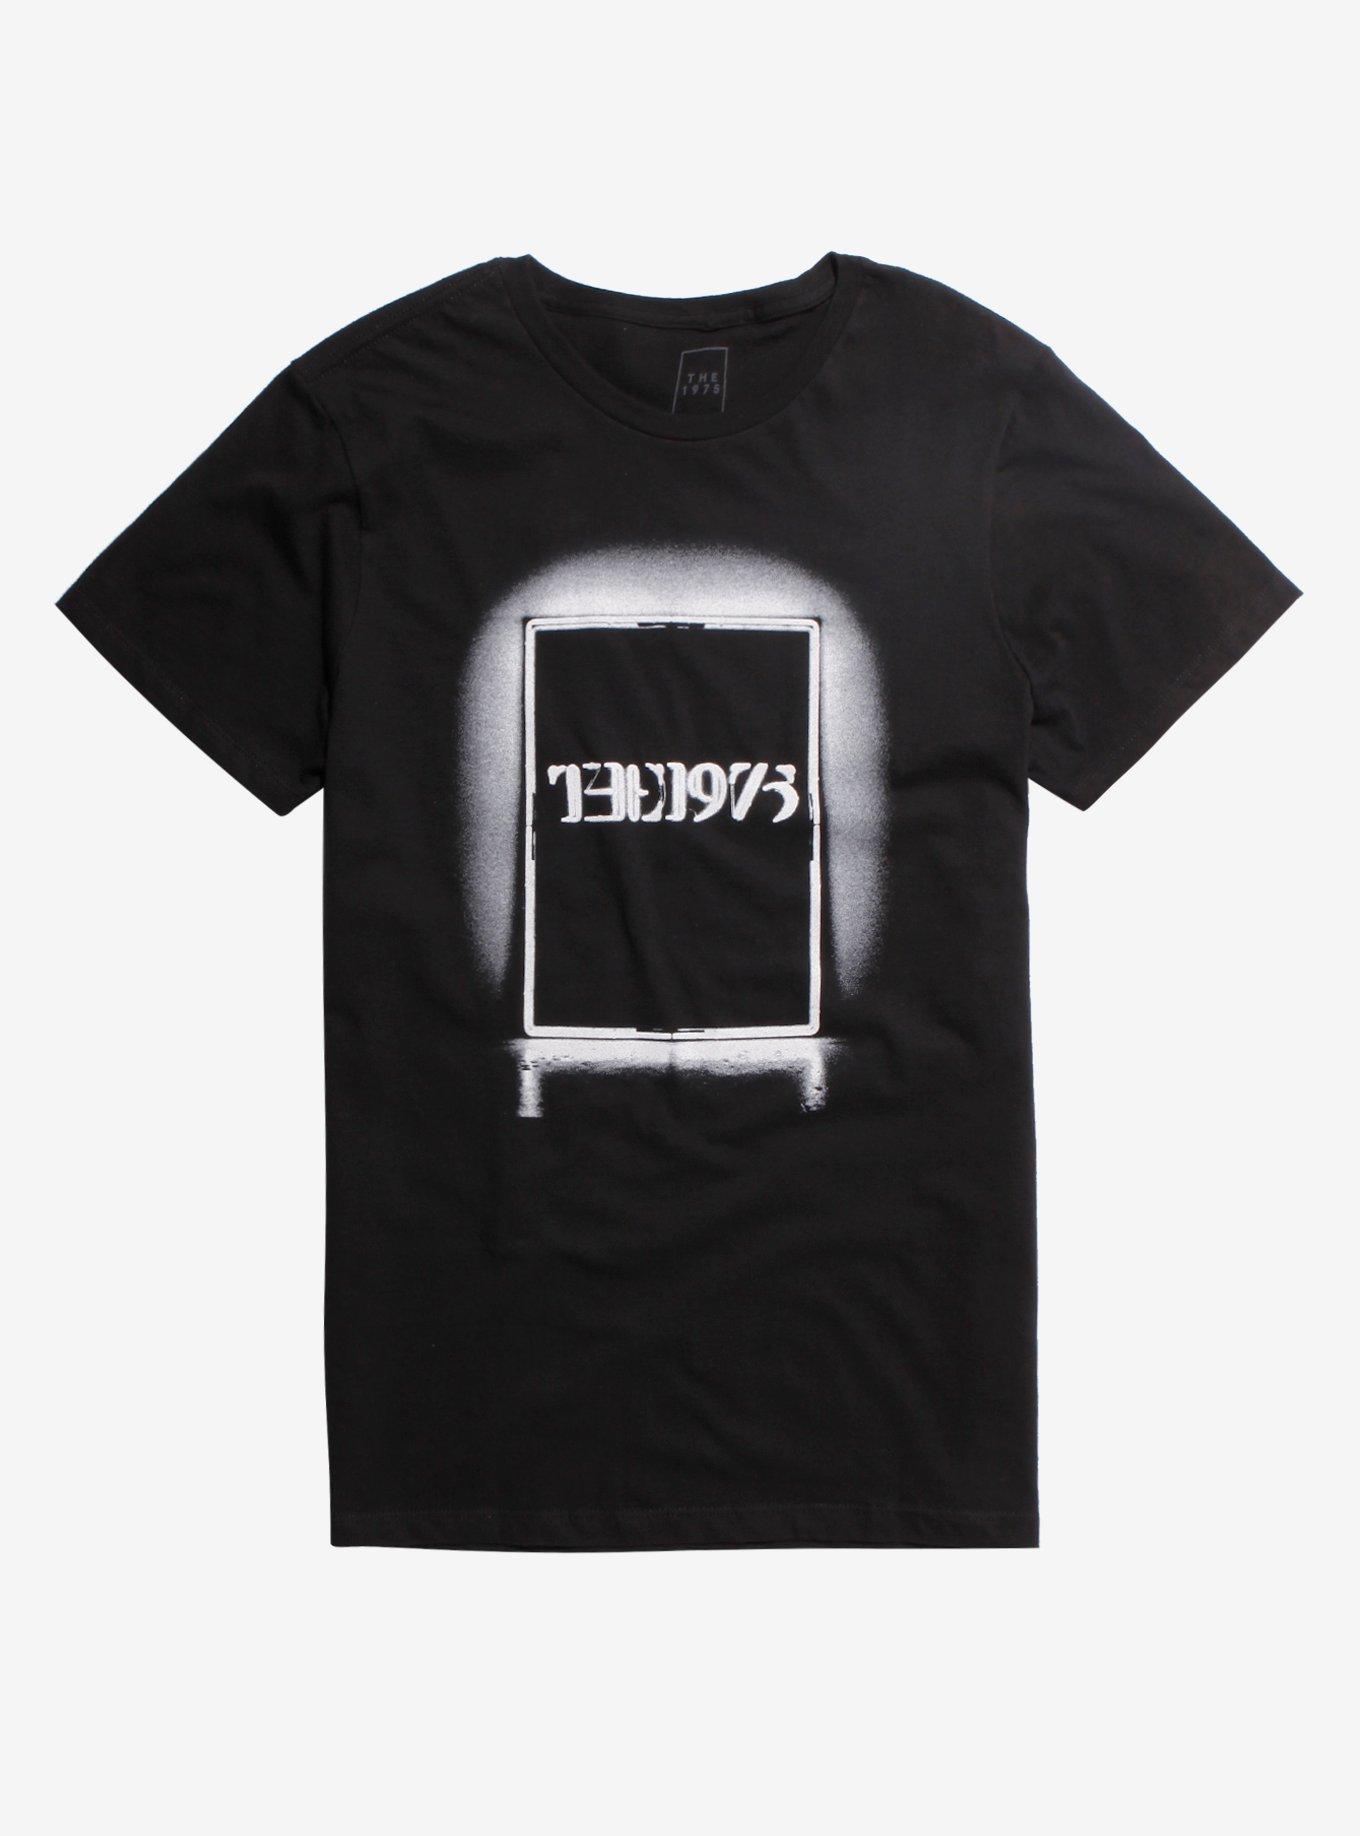 The 1975 Glow Logo T-Shirt | Hot Topic